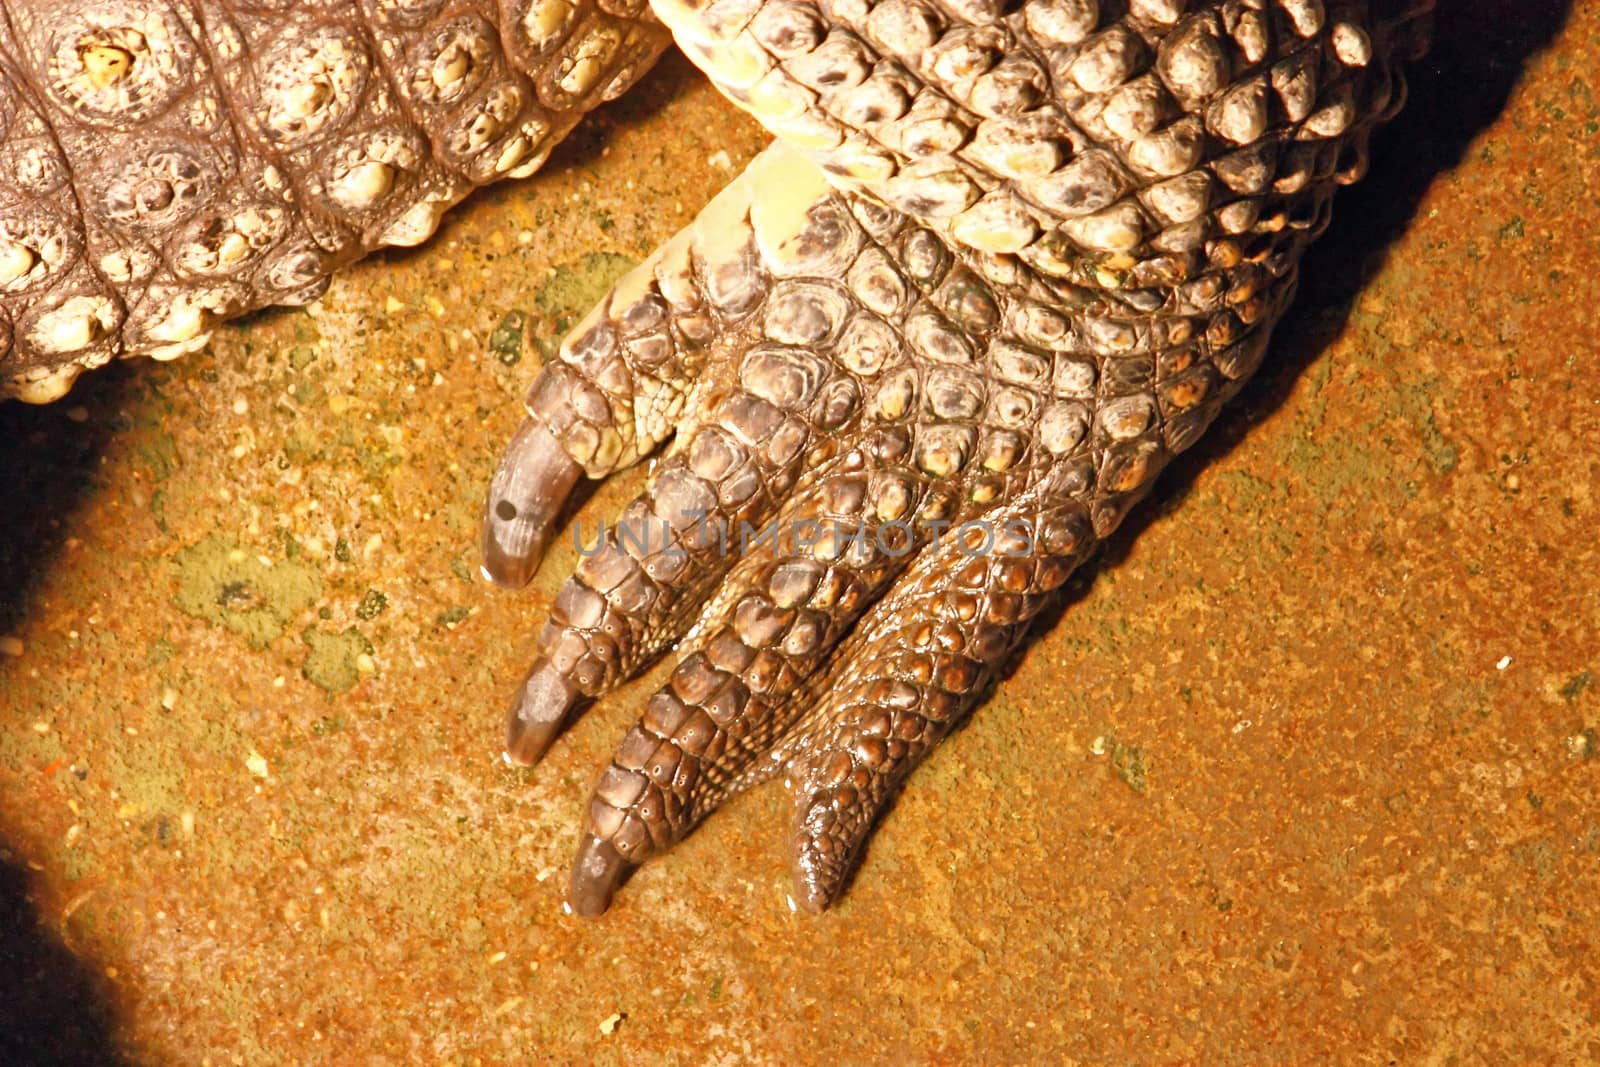 Leg of the Nile crocodile